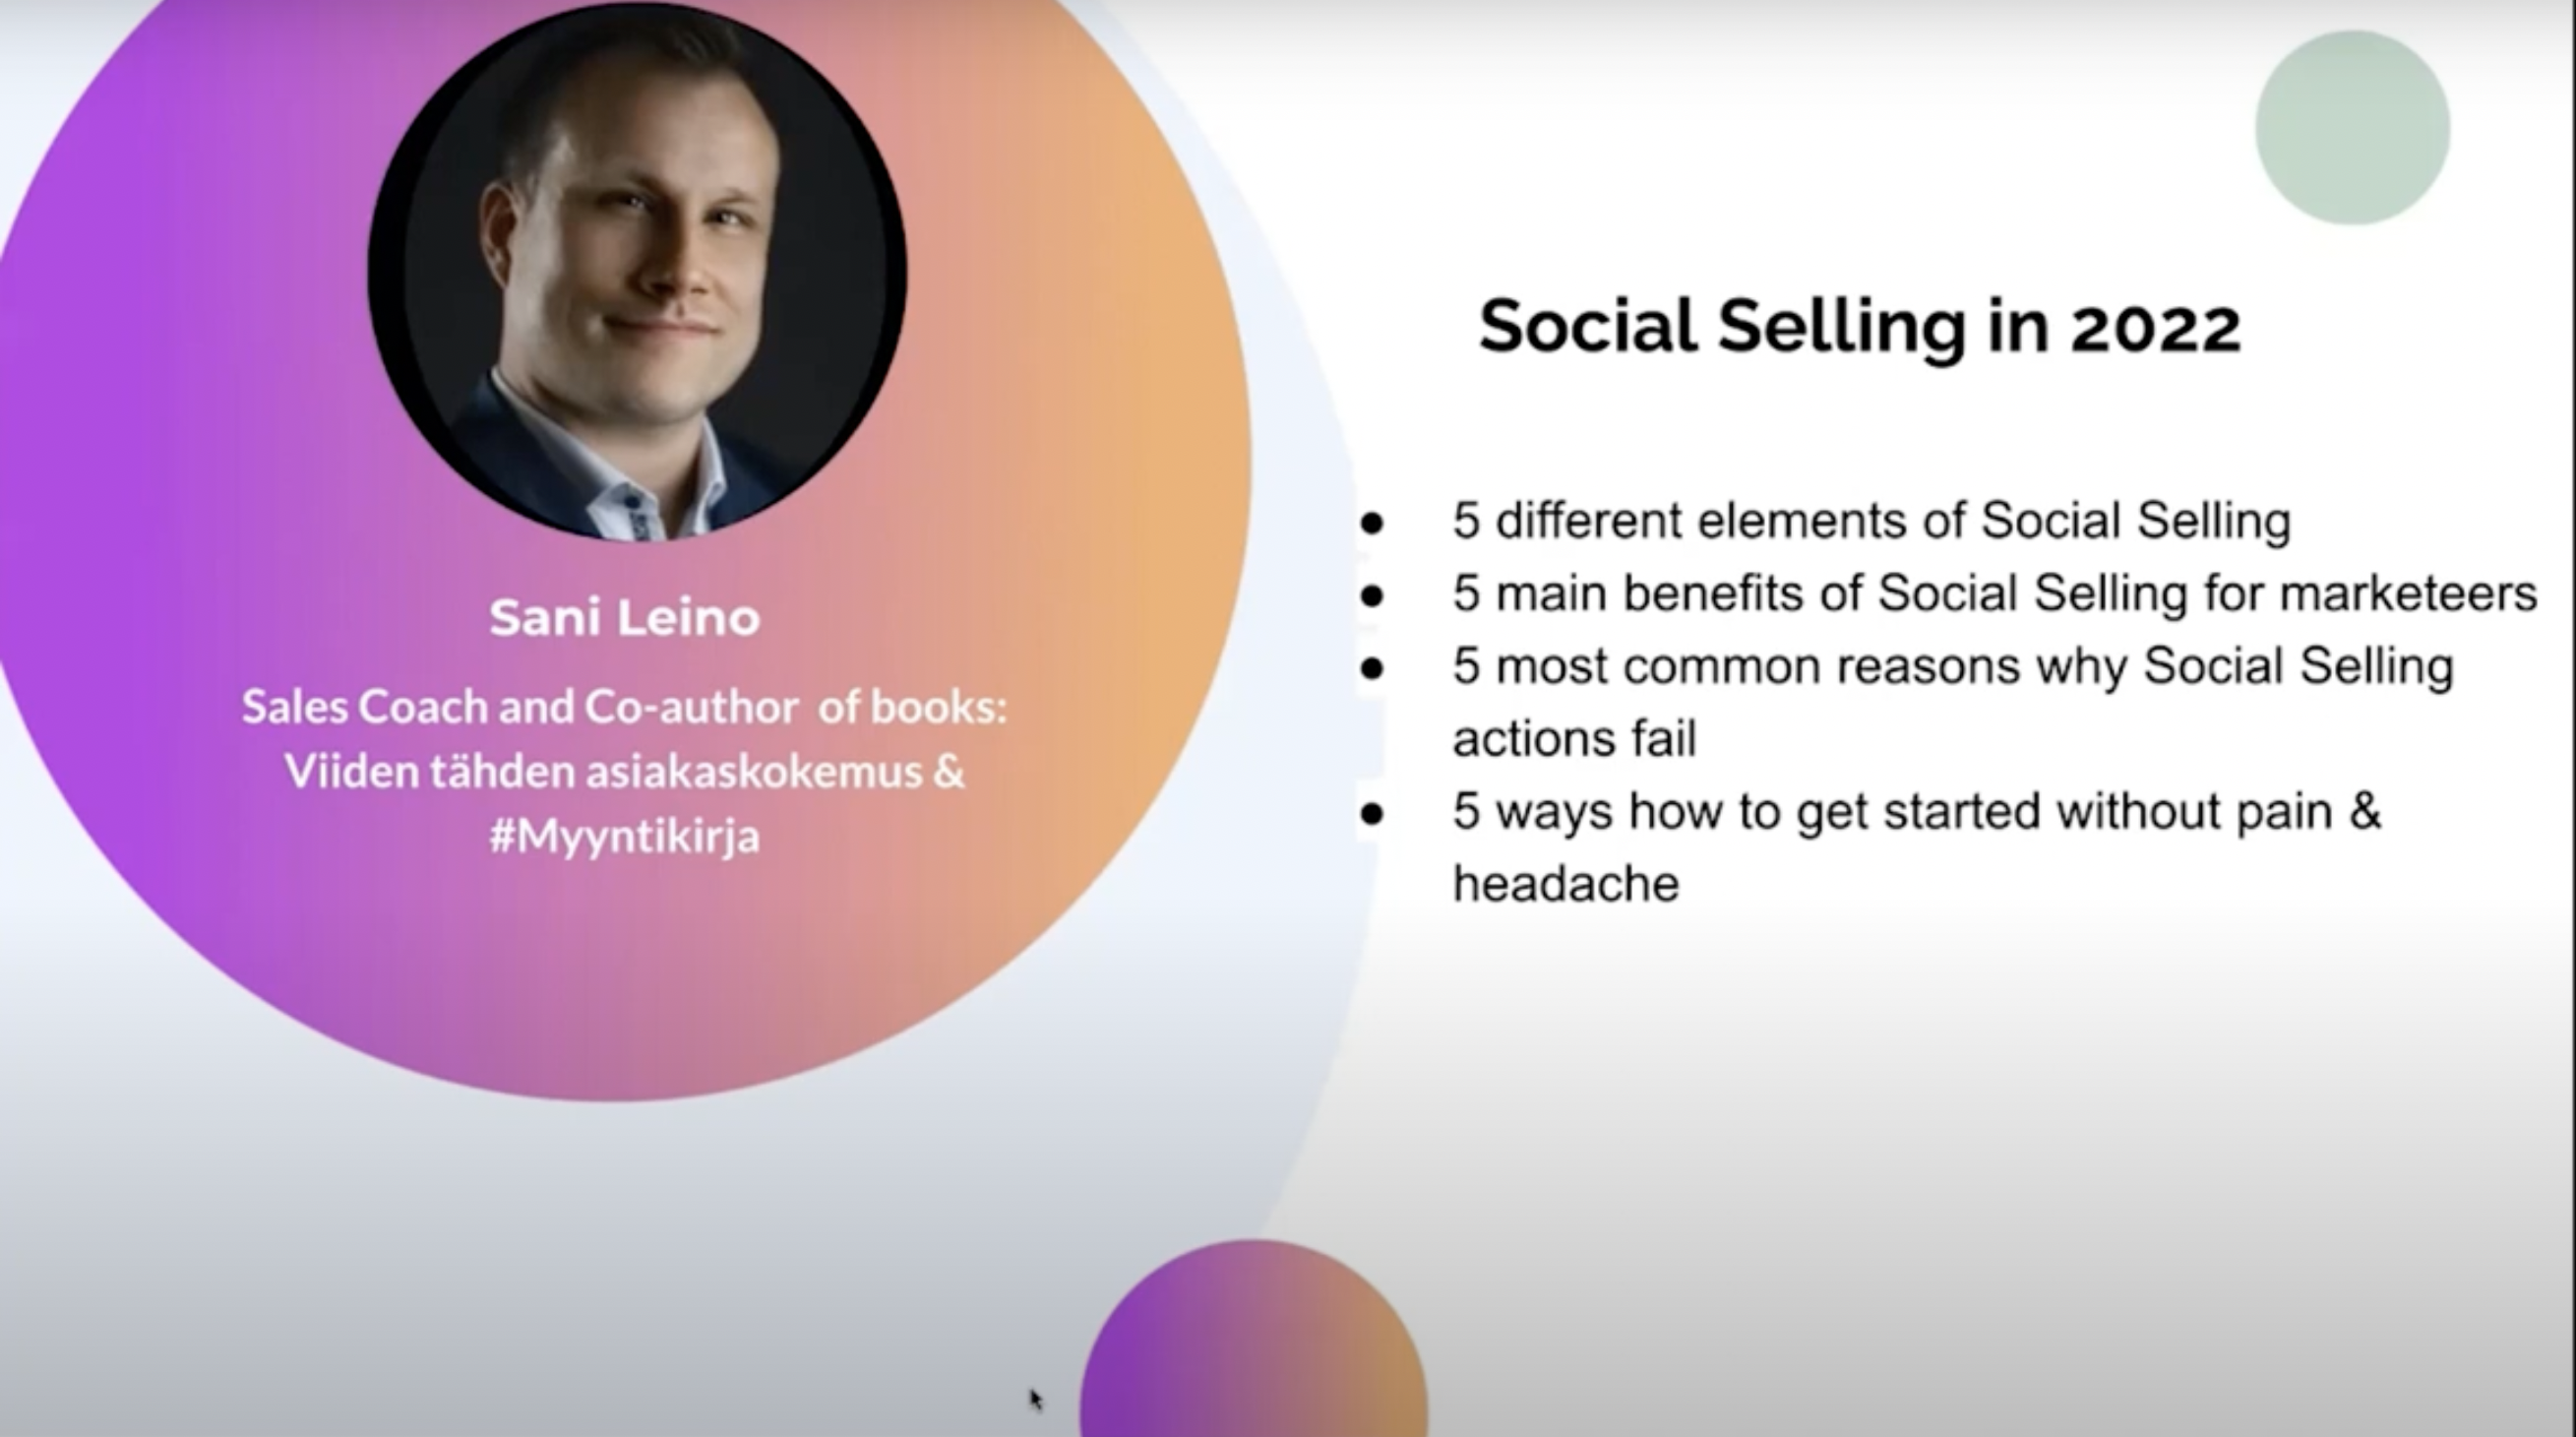 Leveraging Social Selling & Webinars in 2022